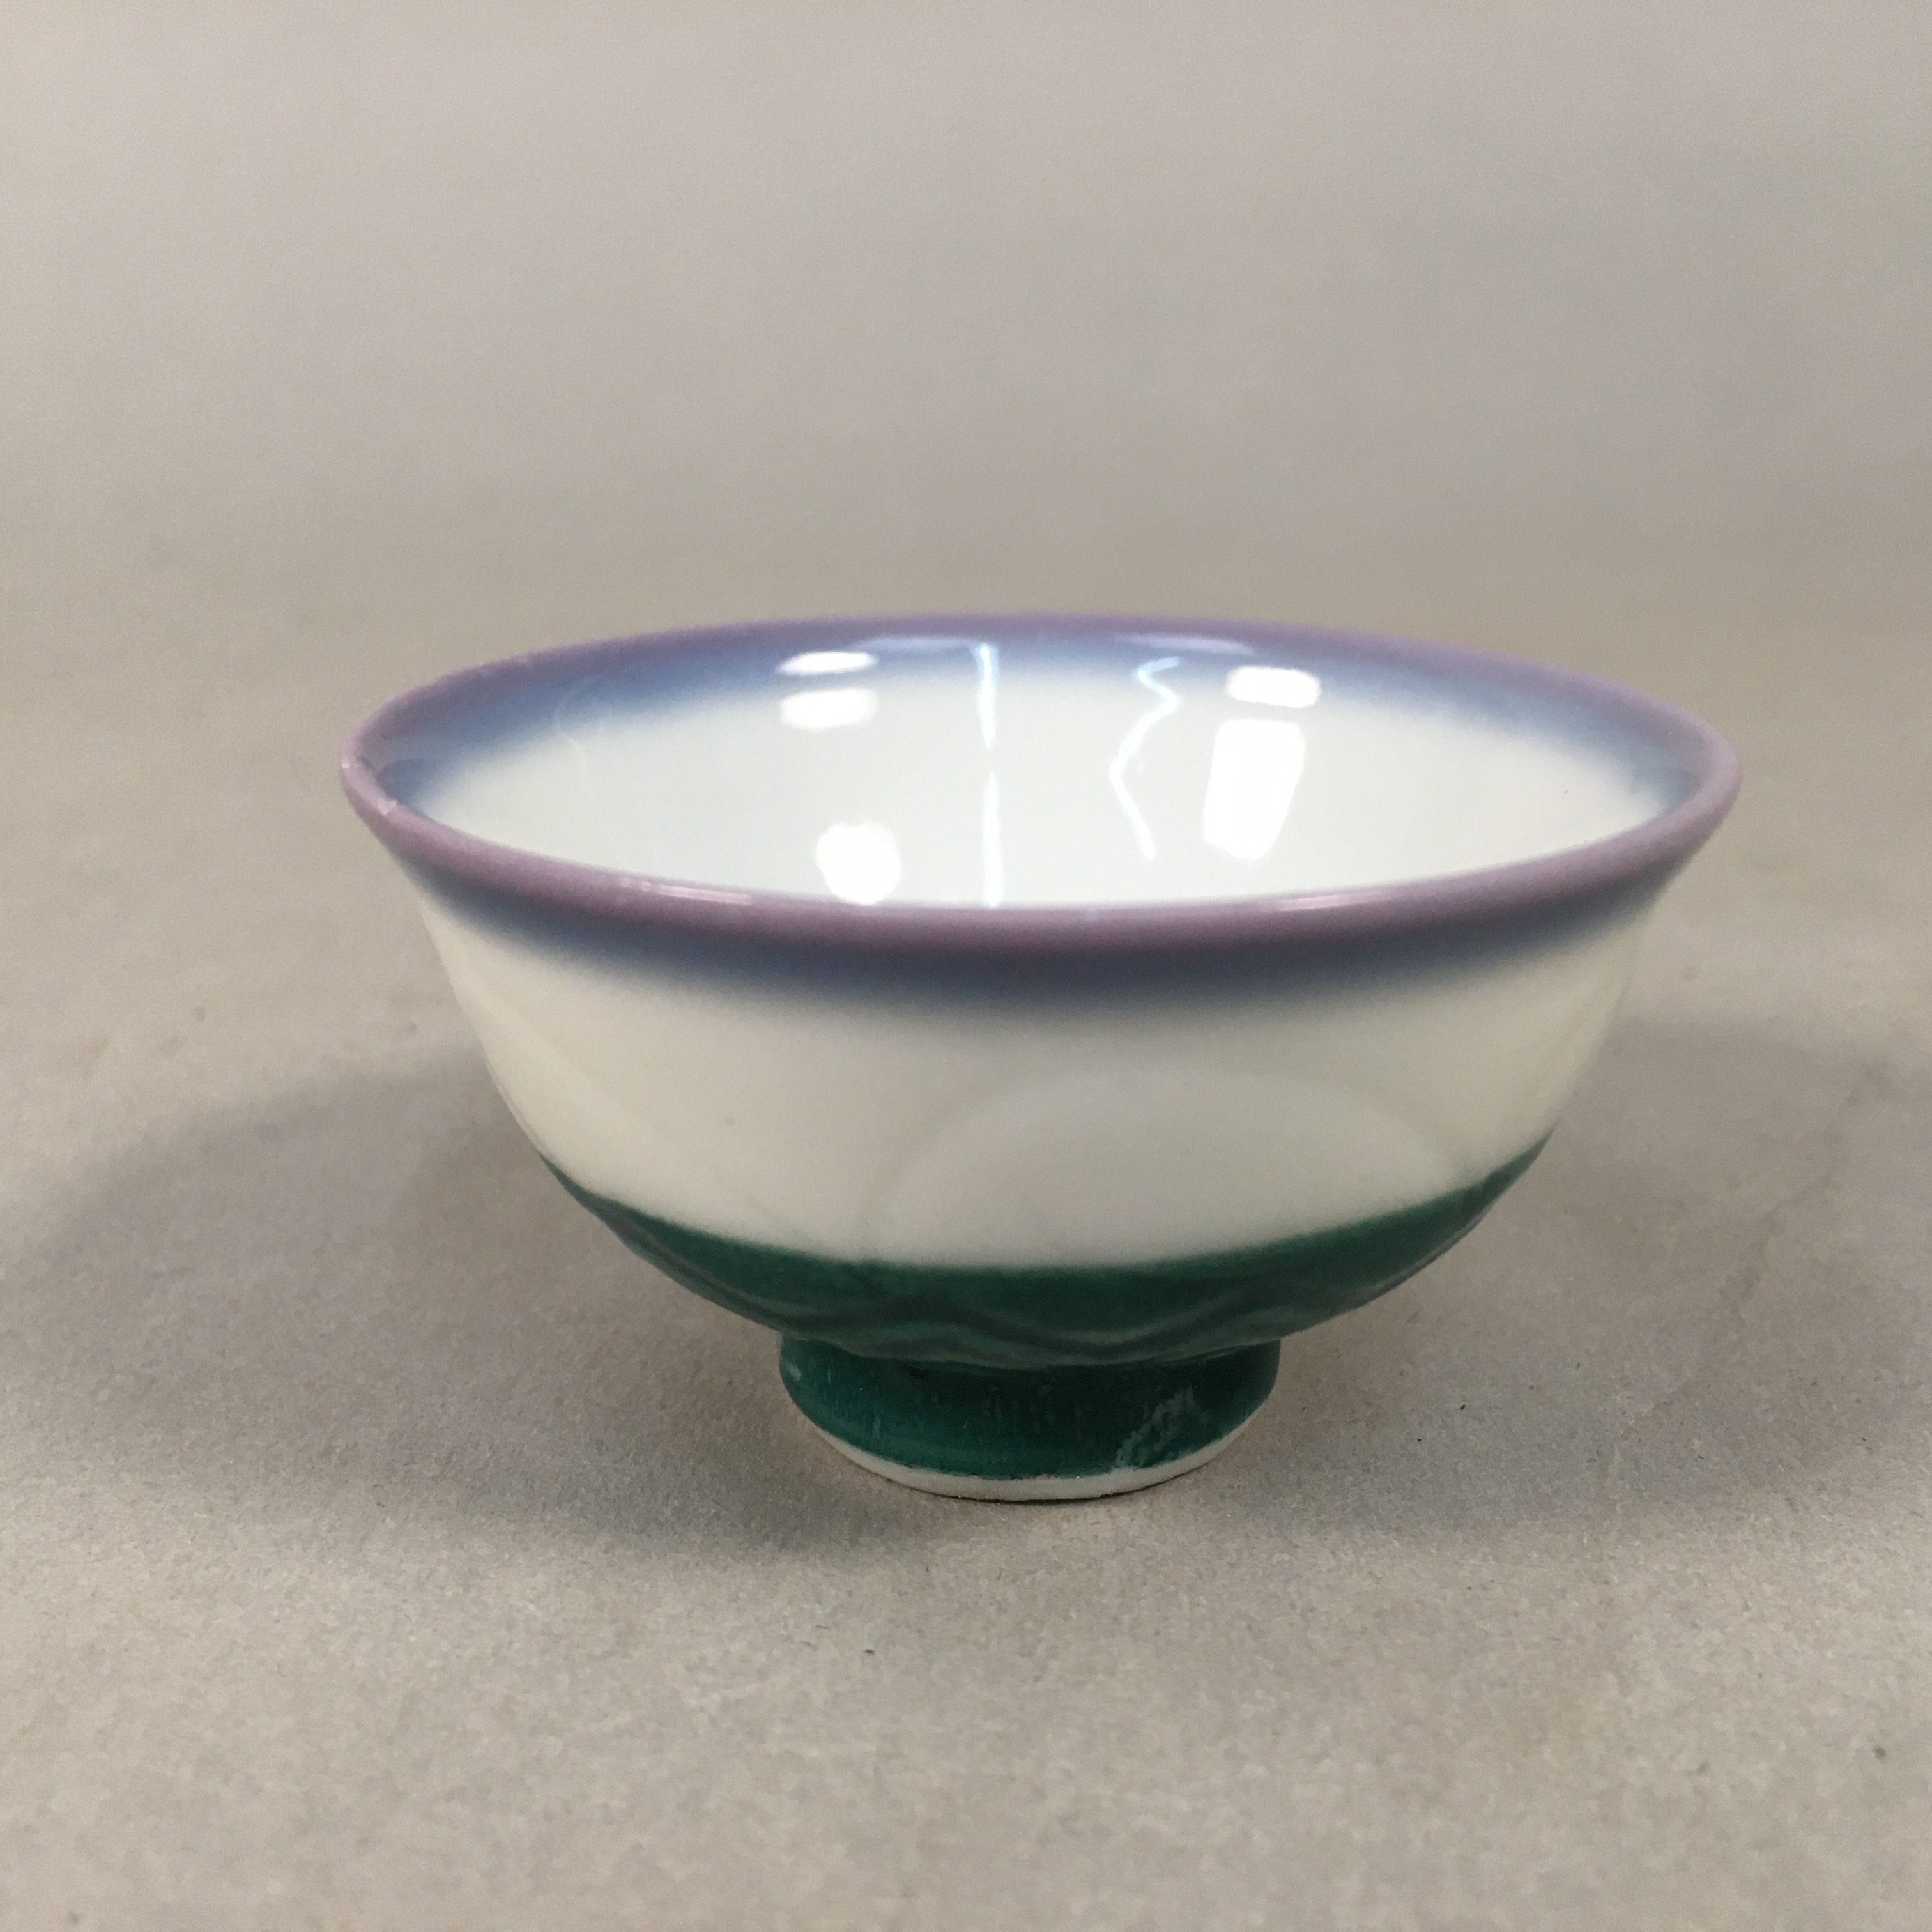 Japanese Porcelain Sake Cup Guinomi Sakazuki Vtg Blue White Green GU851